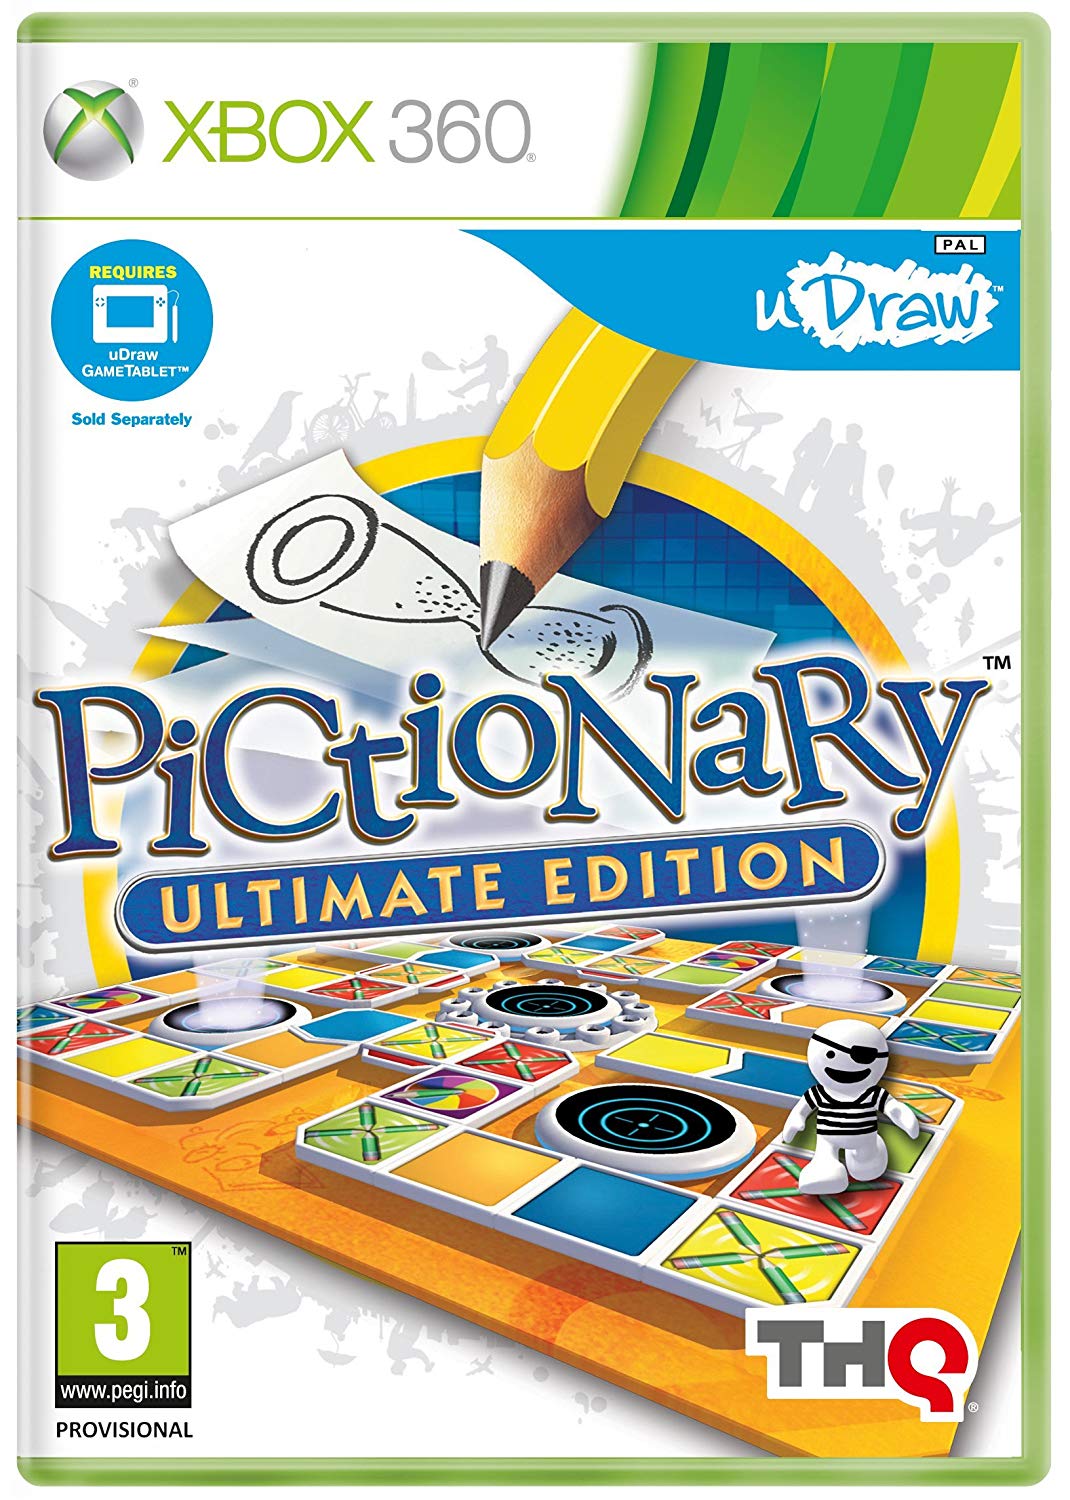 uDraw Pictionary Ultimate Edition (játékszoftver)